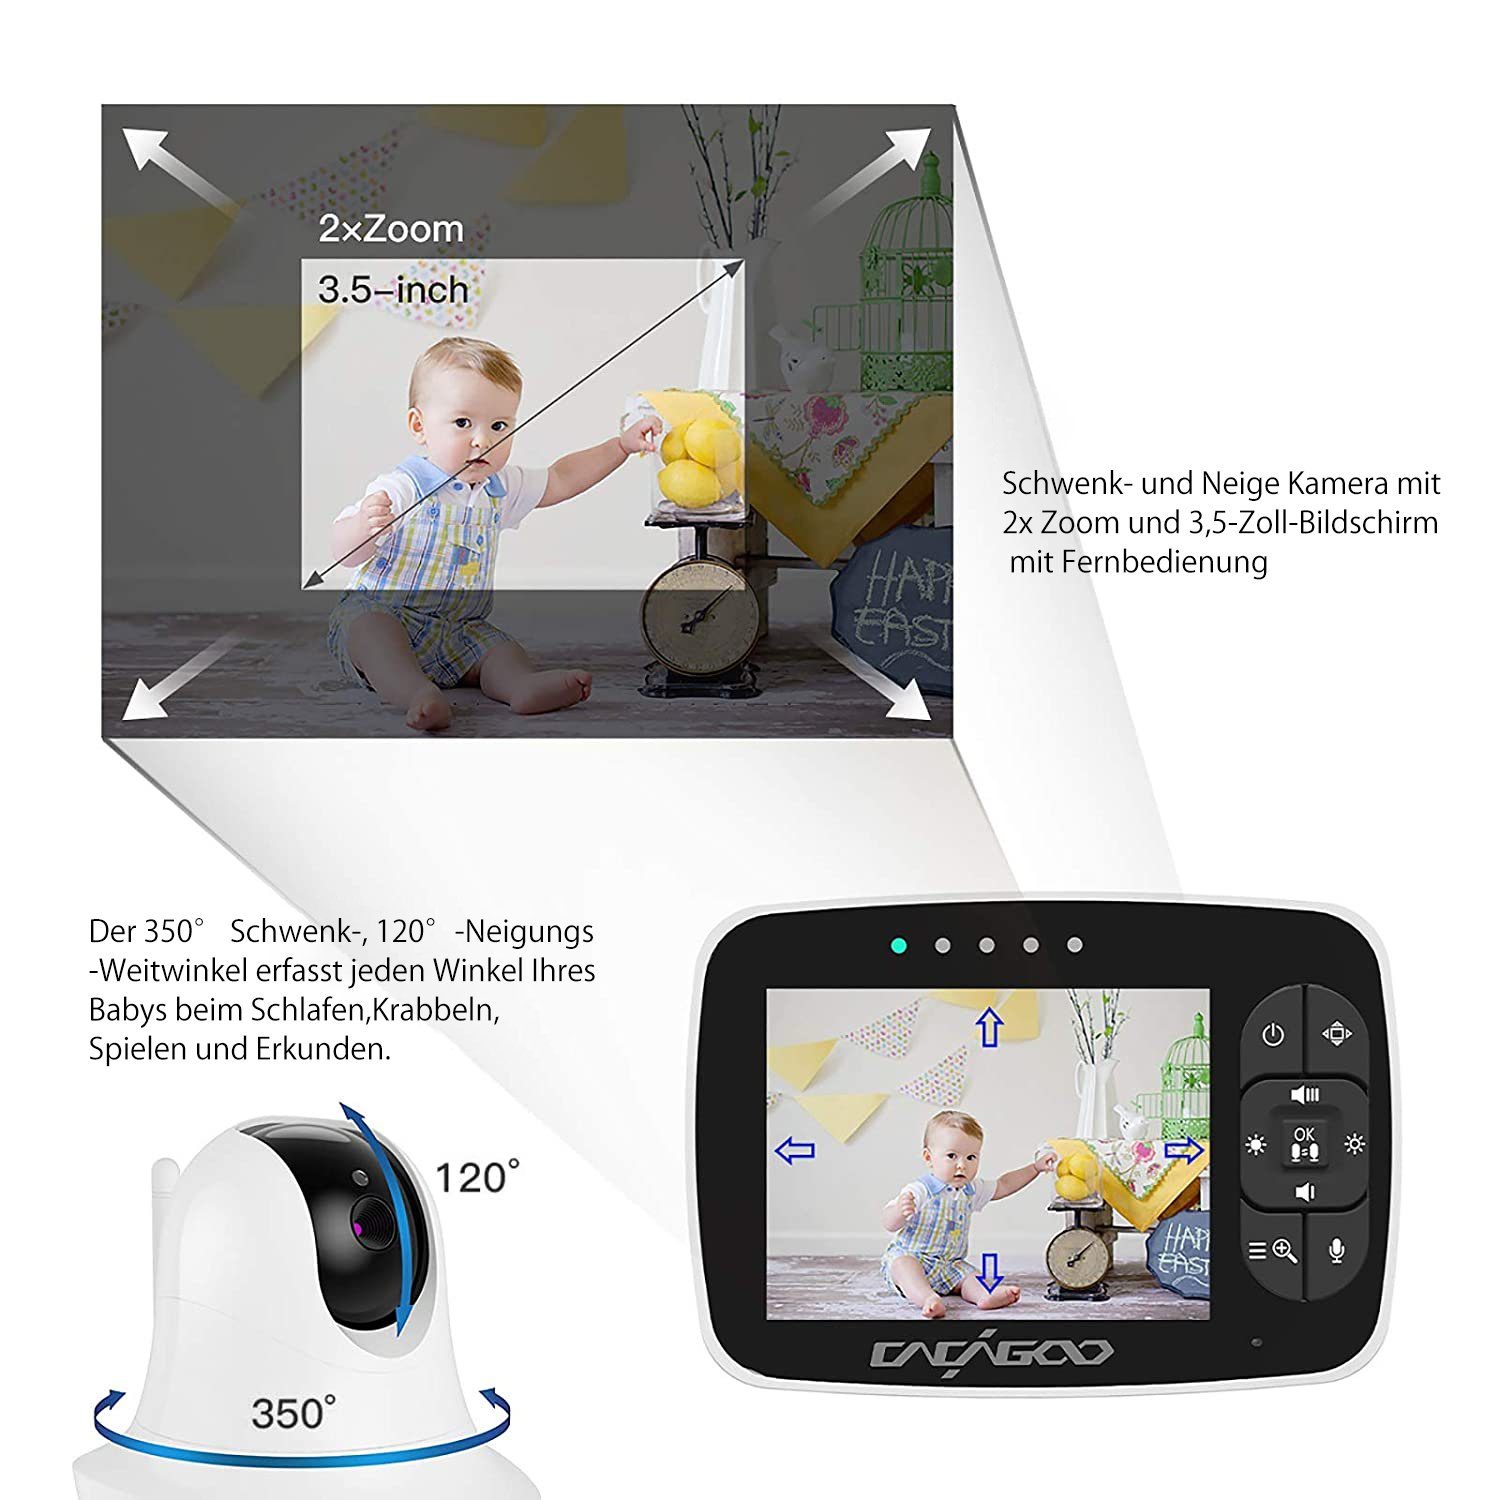 Babyphone Video-Babyphone mit Mutoy Gegensprechfunktion und ECO-Modus Smart kamera,